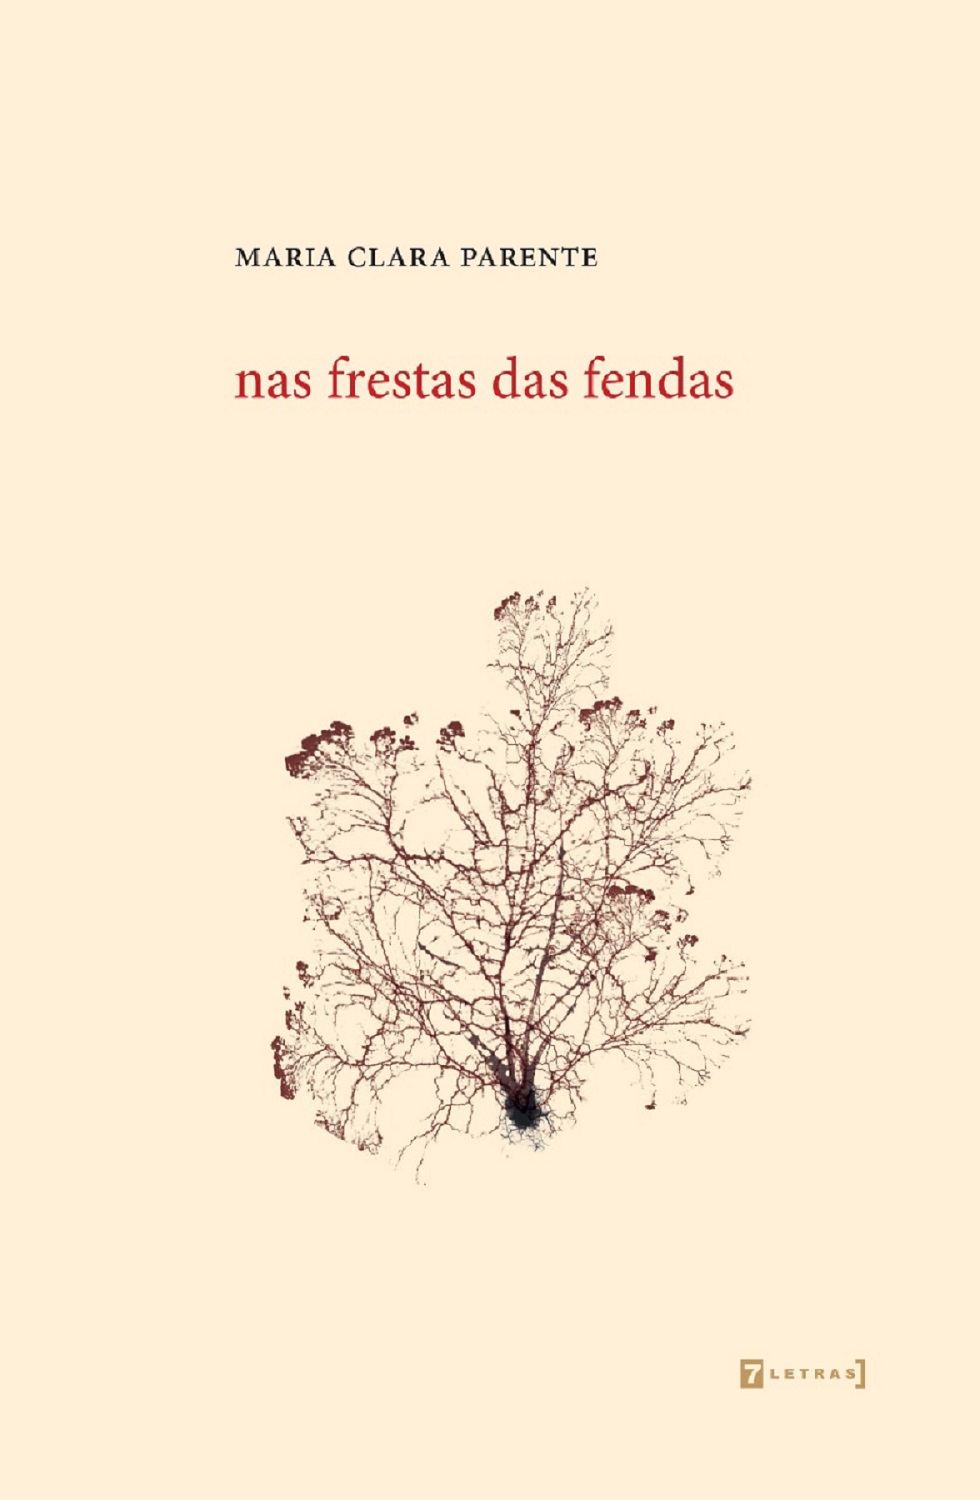 capa do primeiro livro de Maria Clara Parente